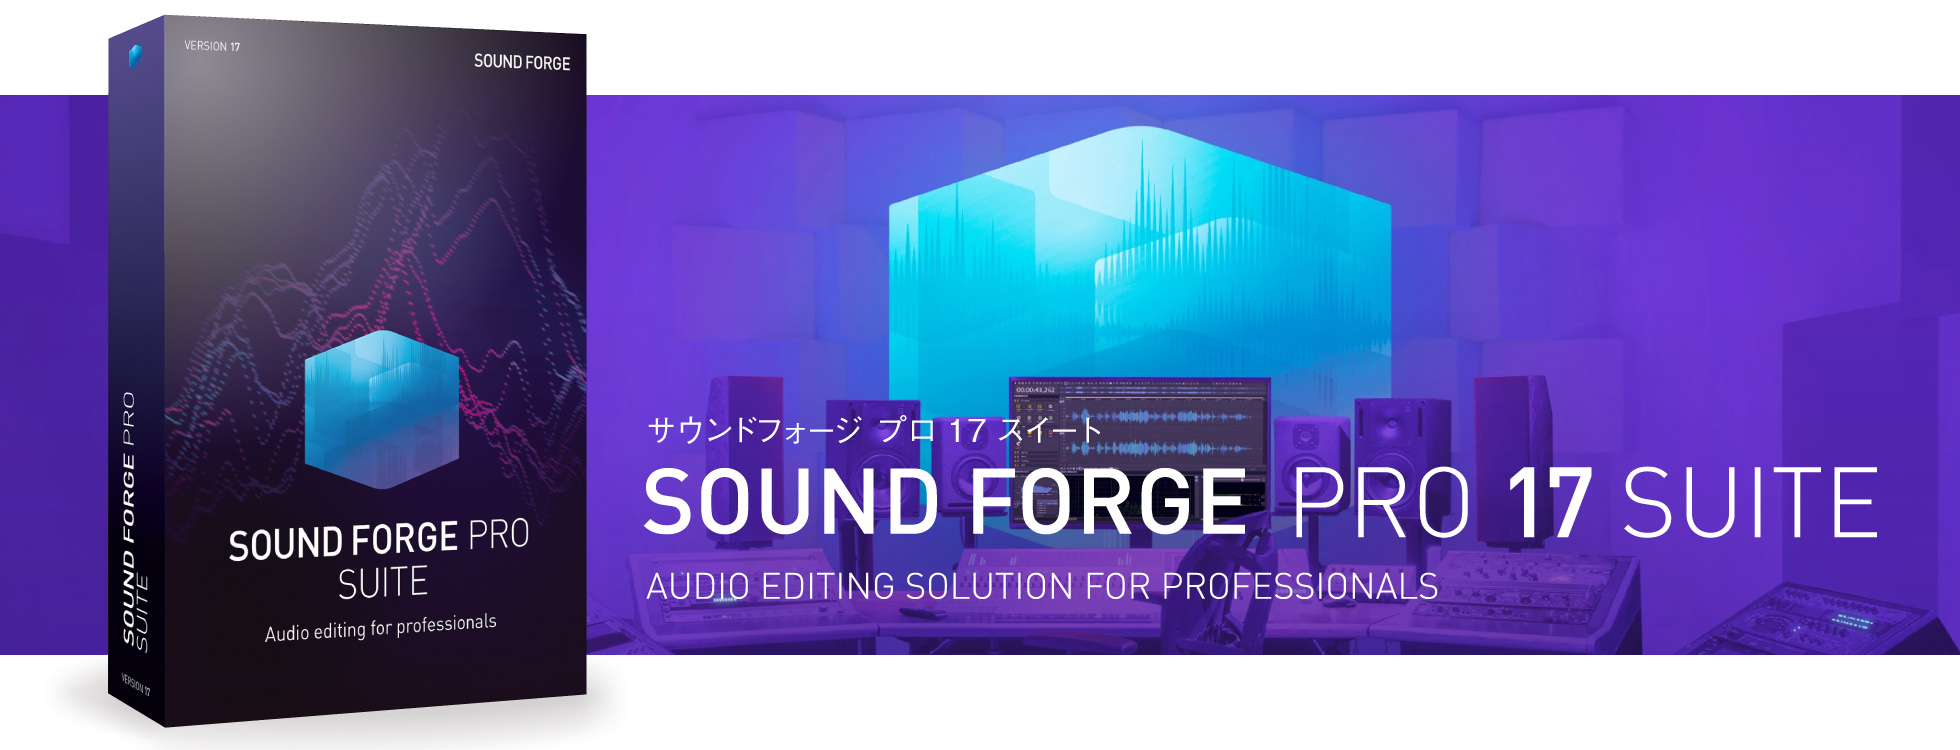 プロ仕様サウンド編集ソフト「SOUND FORGE Pro 17 Suite」